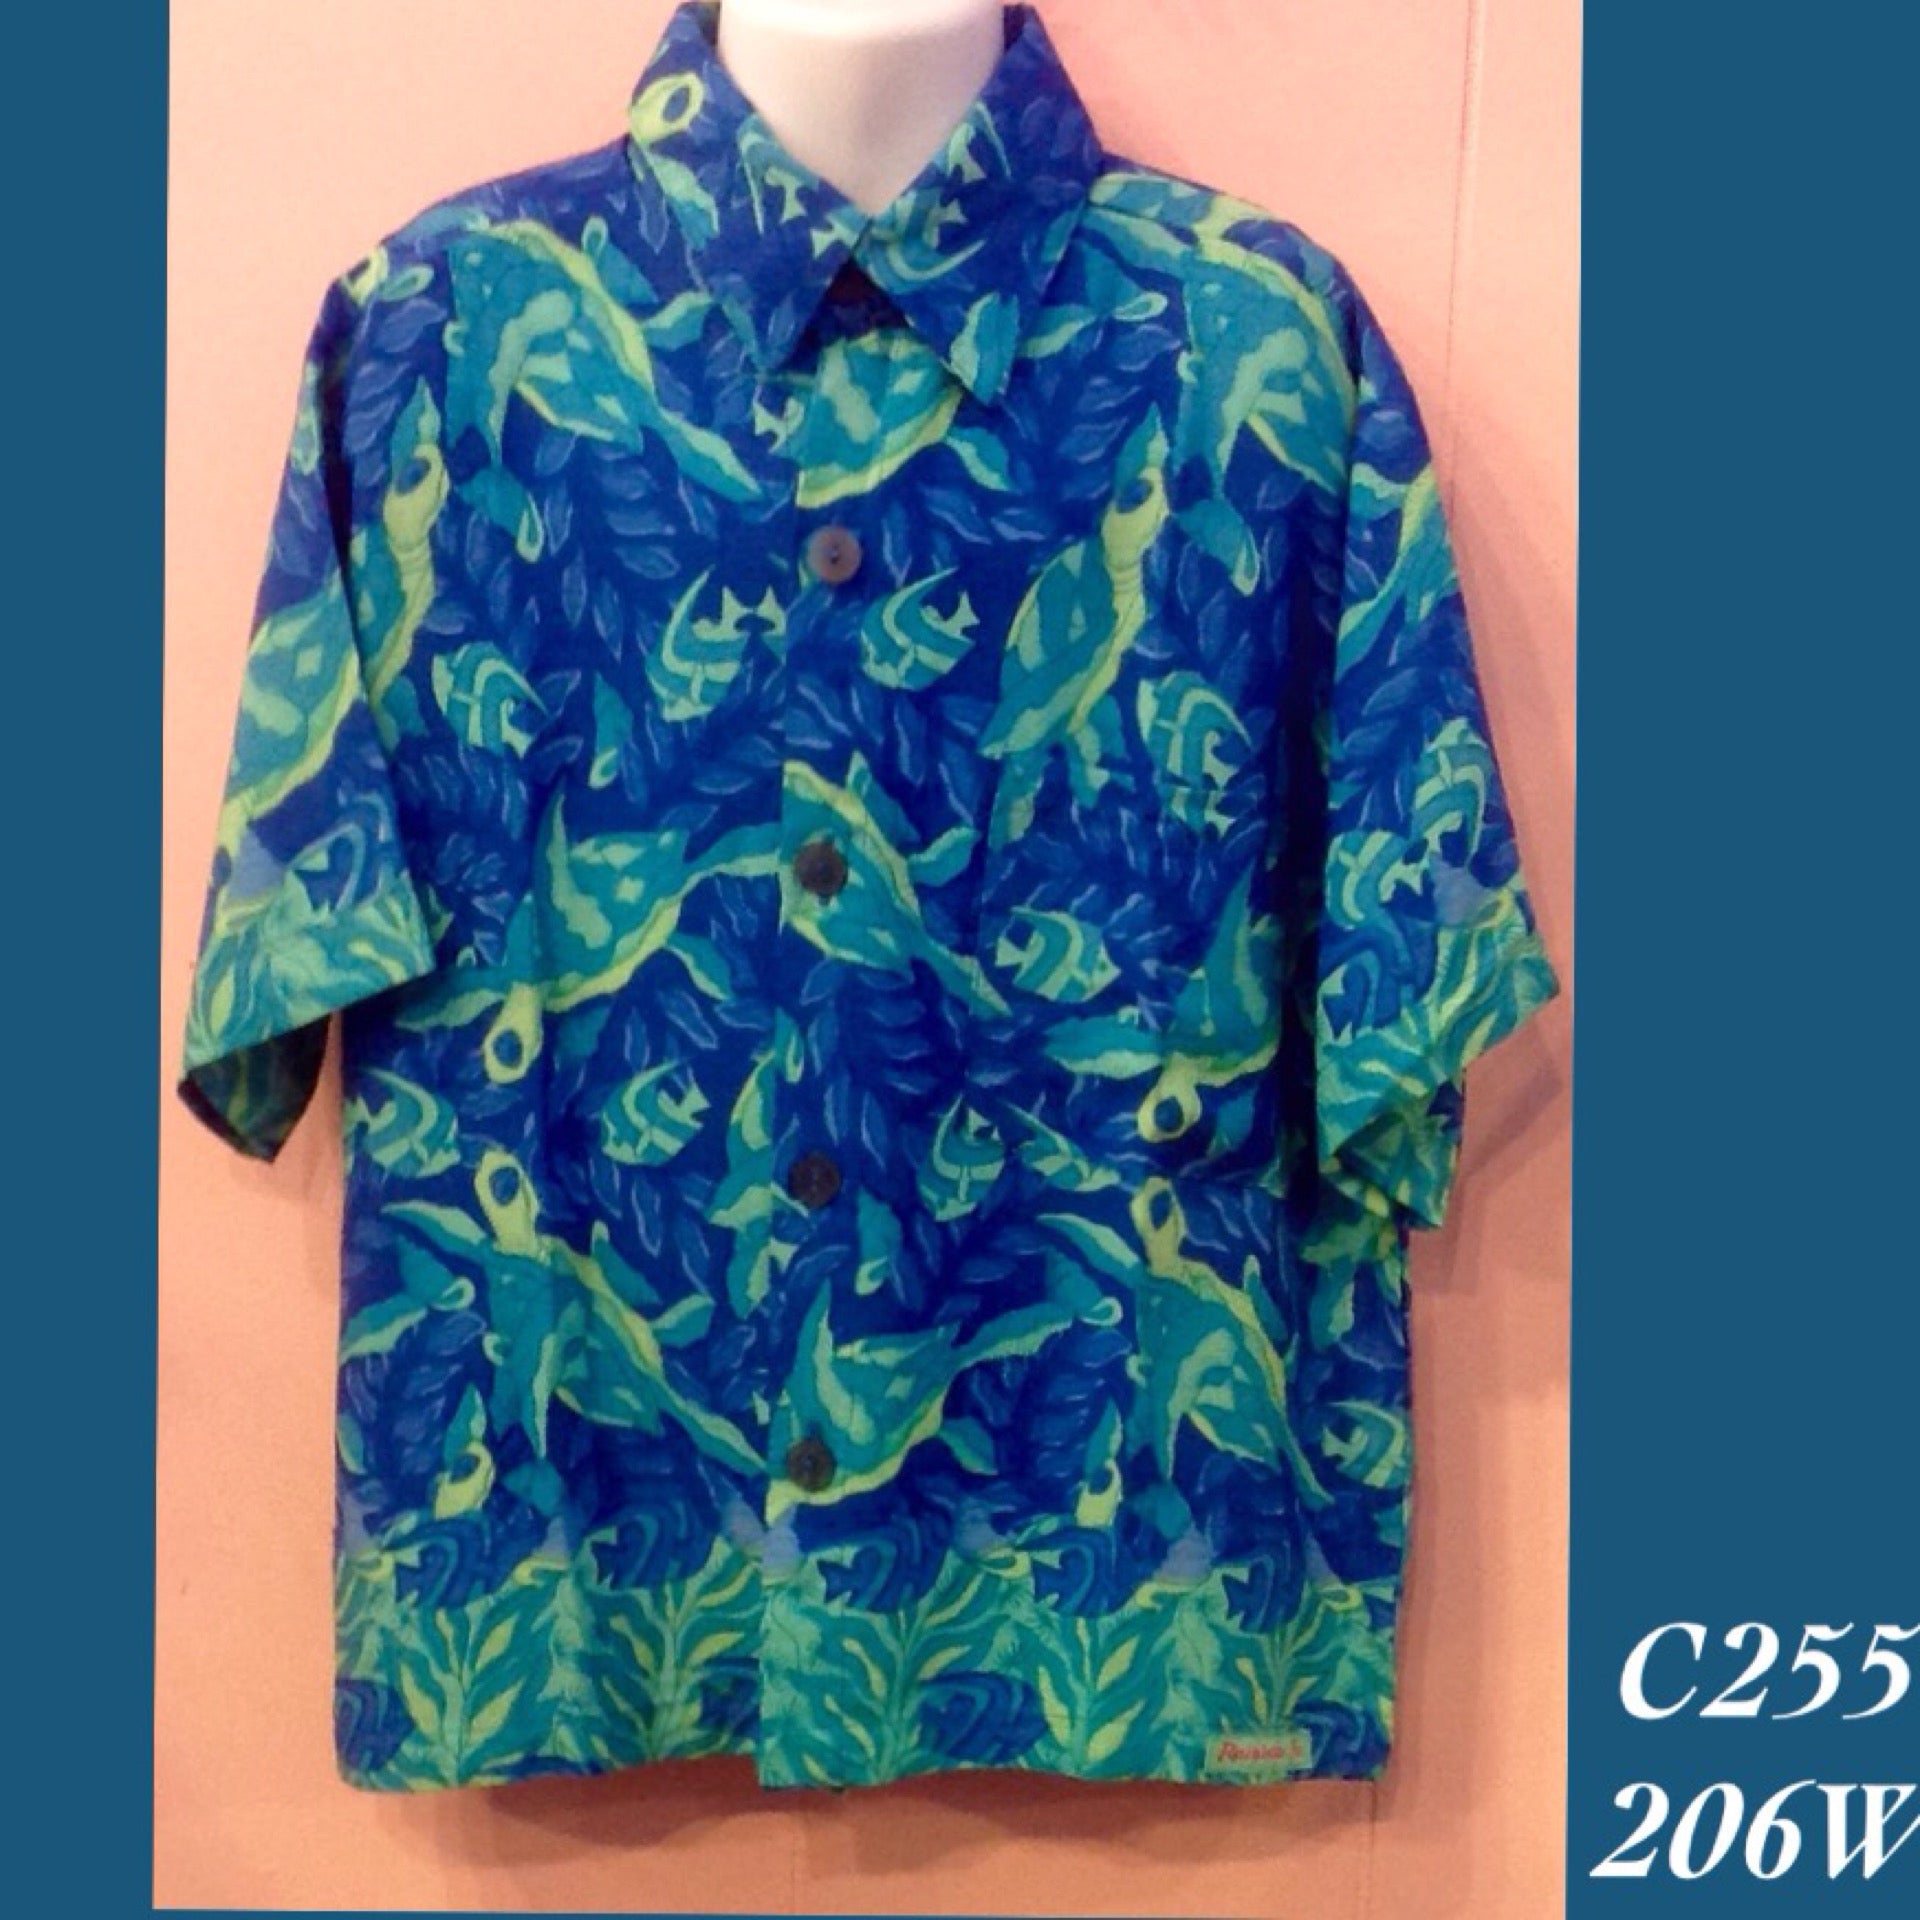 C255 - 206W , Boy's Aloha Shirt